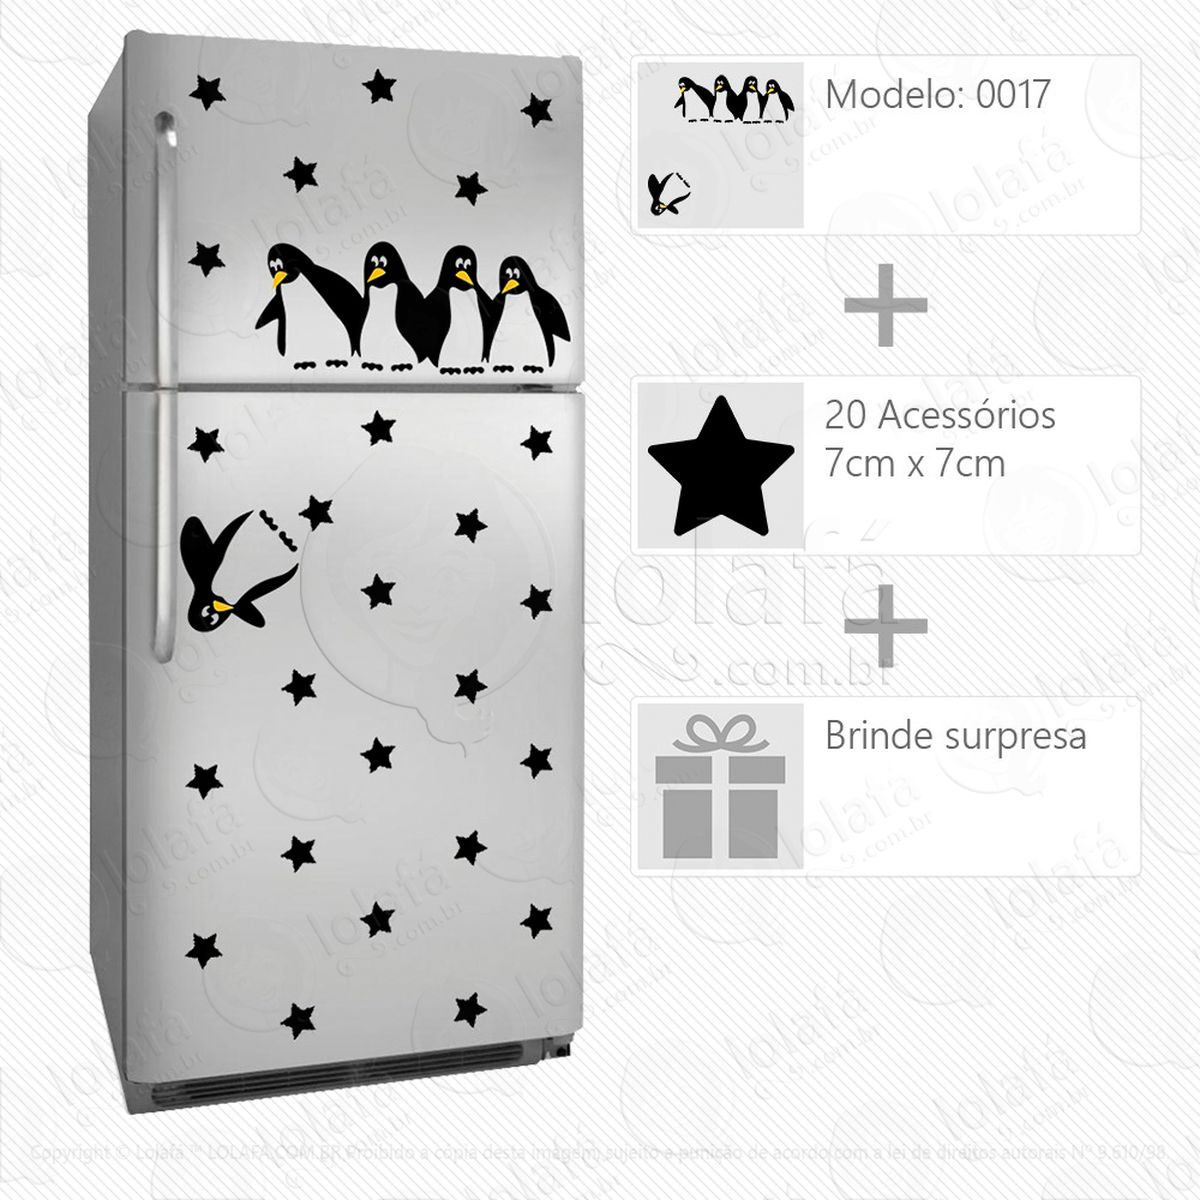 pinguins adesivo para geladeira e frigobar - mod:17